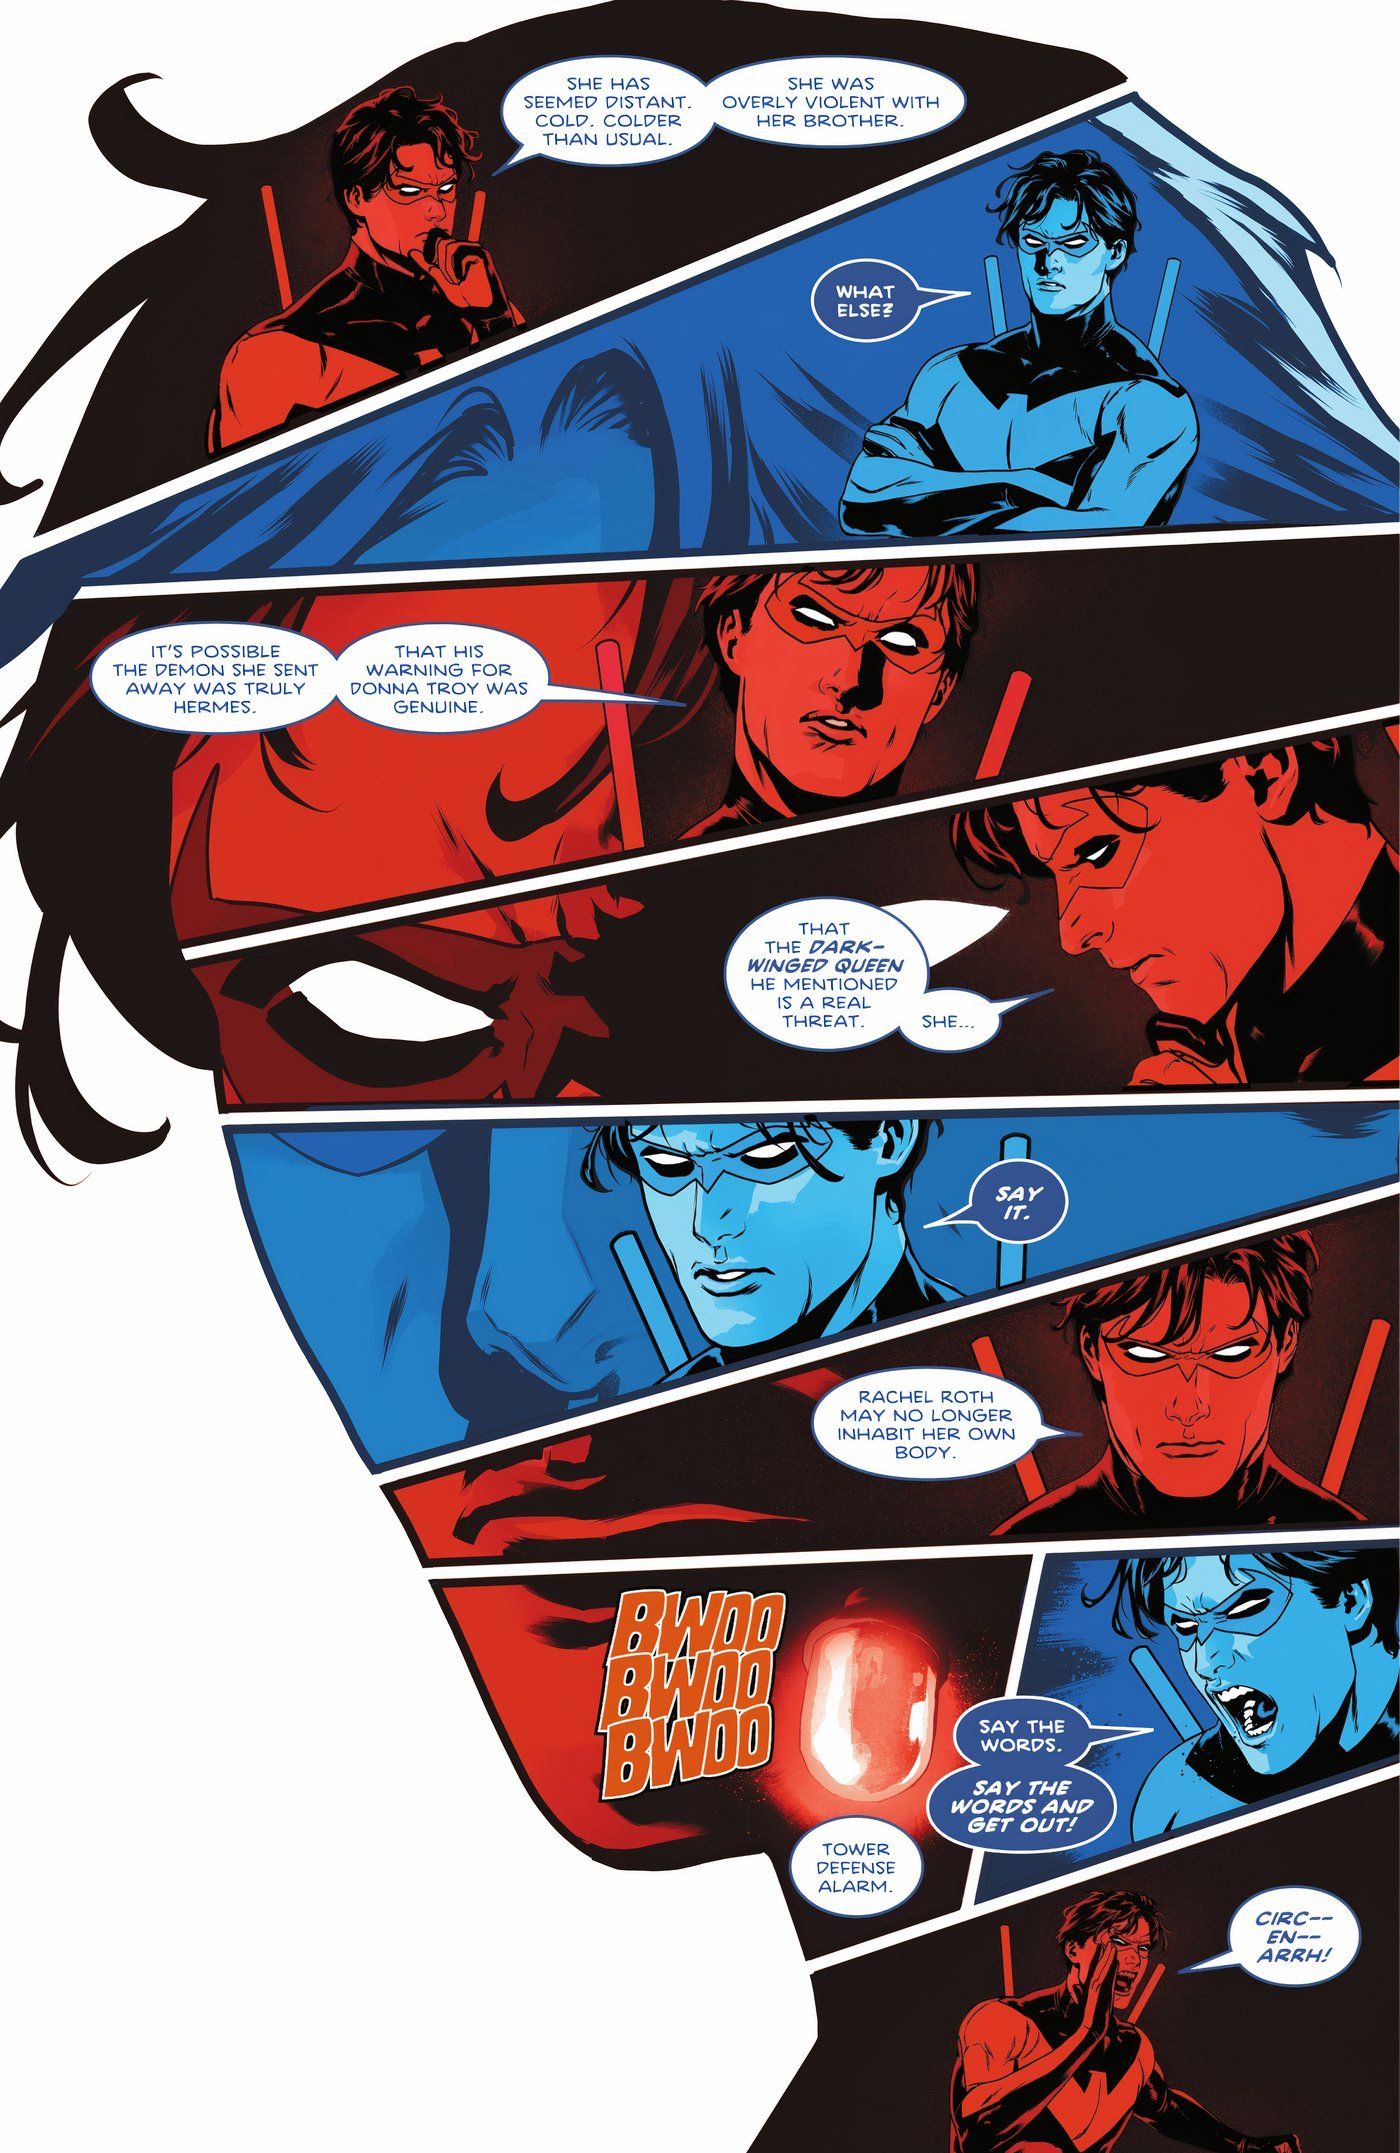 Quadrinhos: versões mentais em vermelho e azul do Asa Noturna conversando dentro dos limites de sua cabeça.